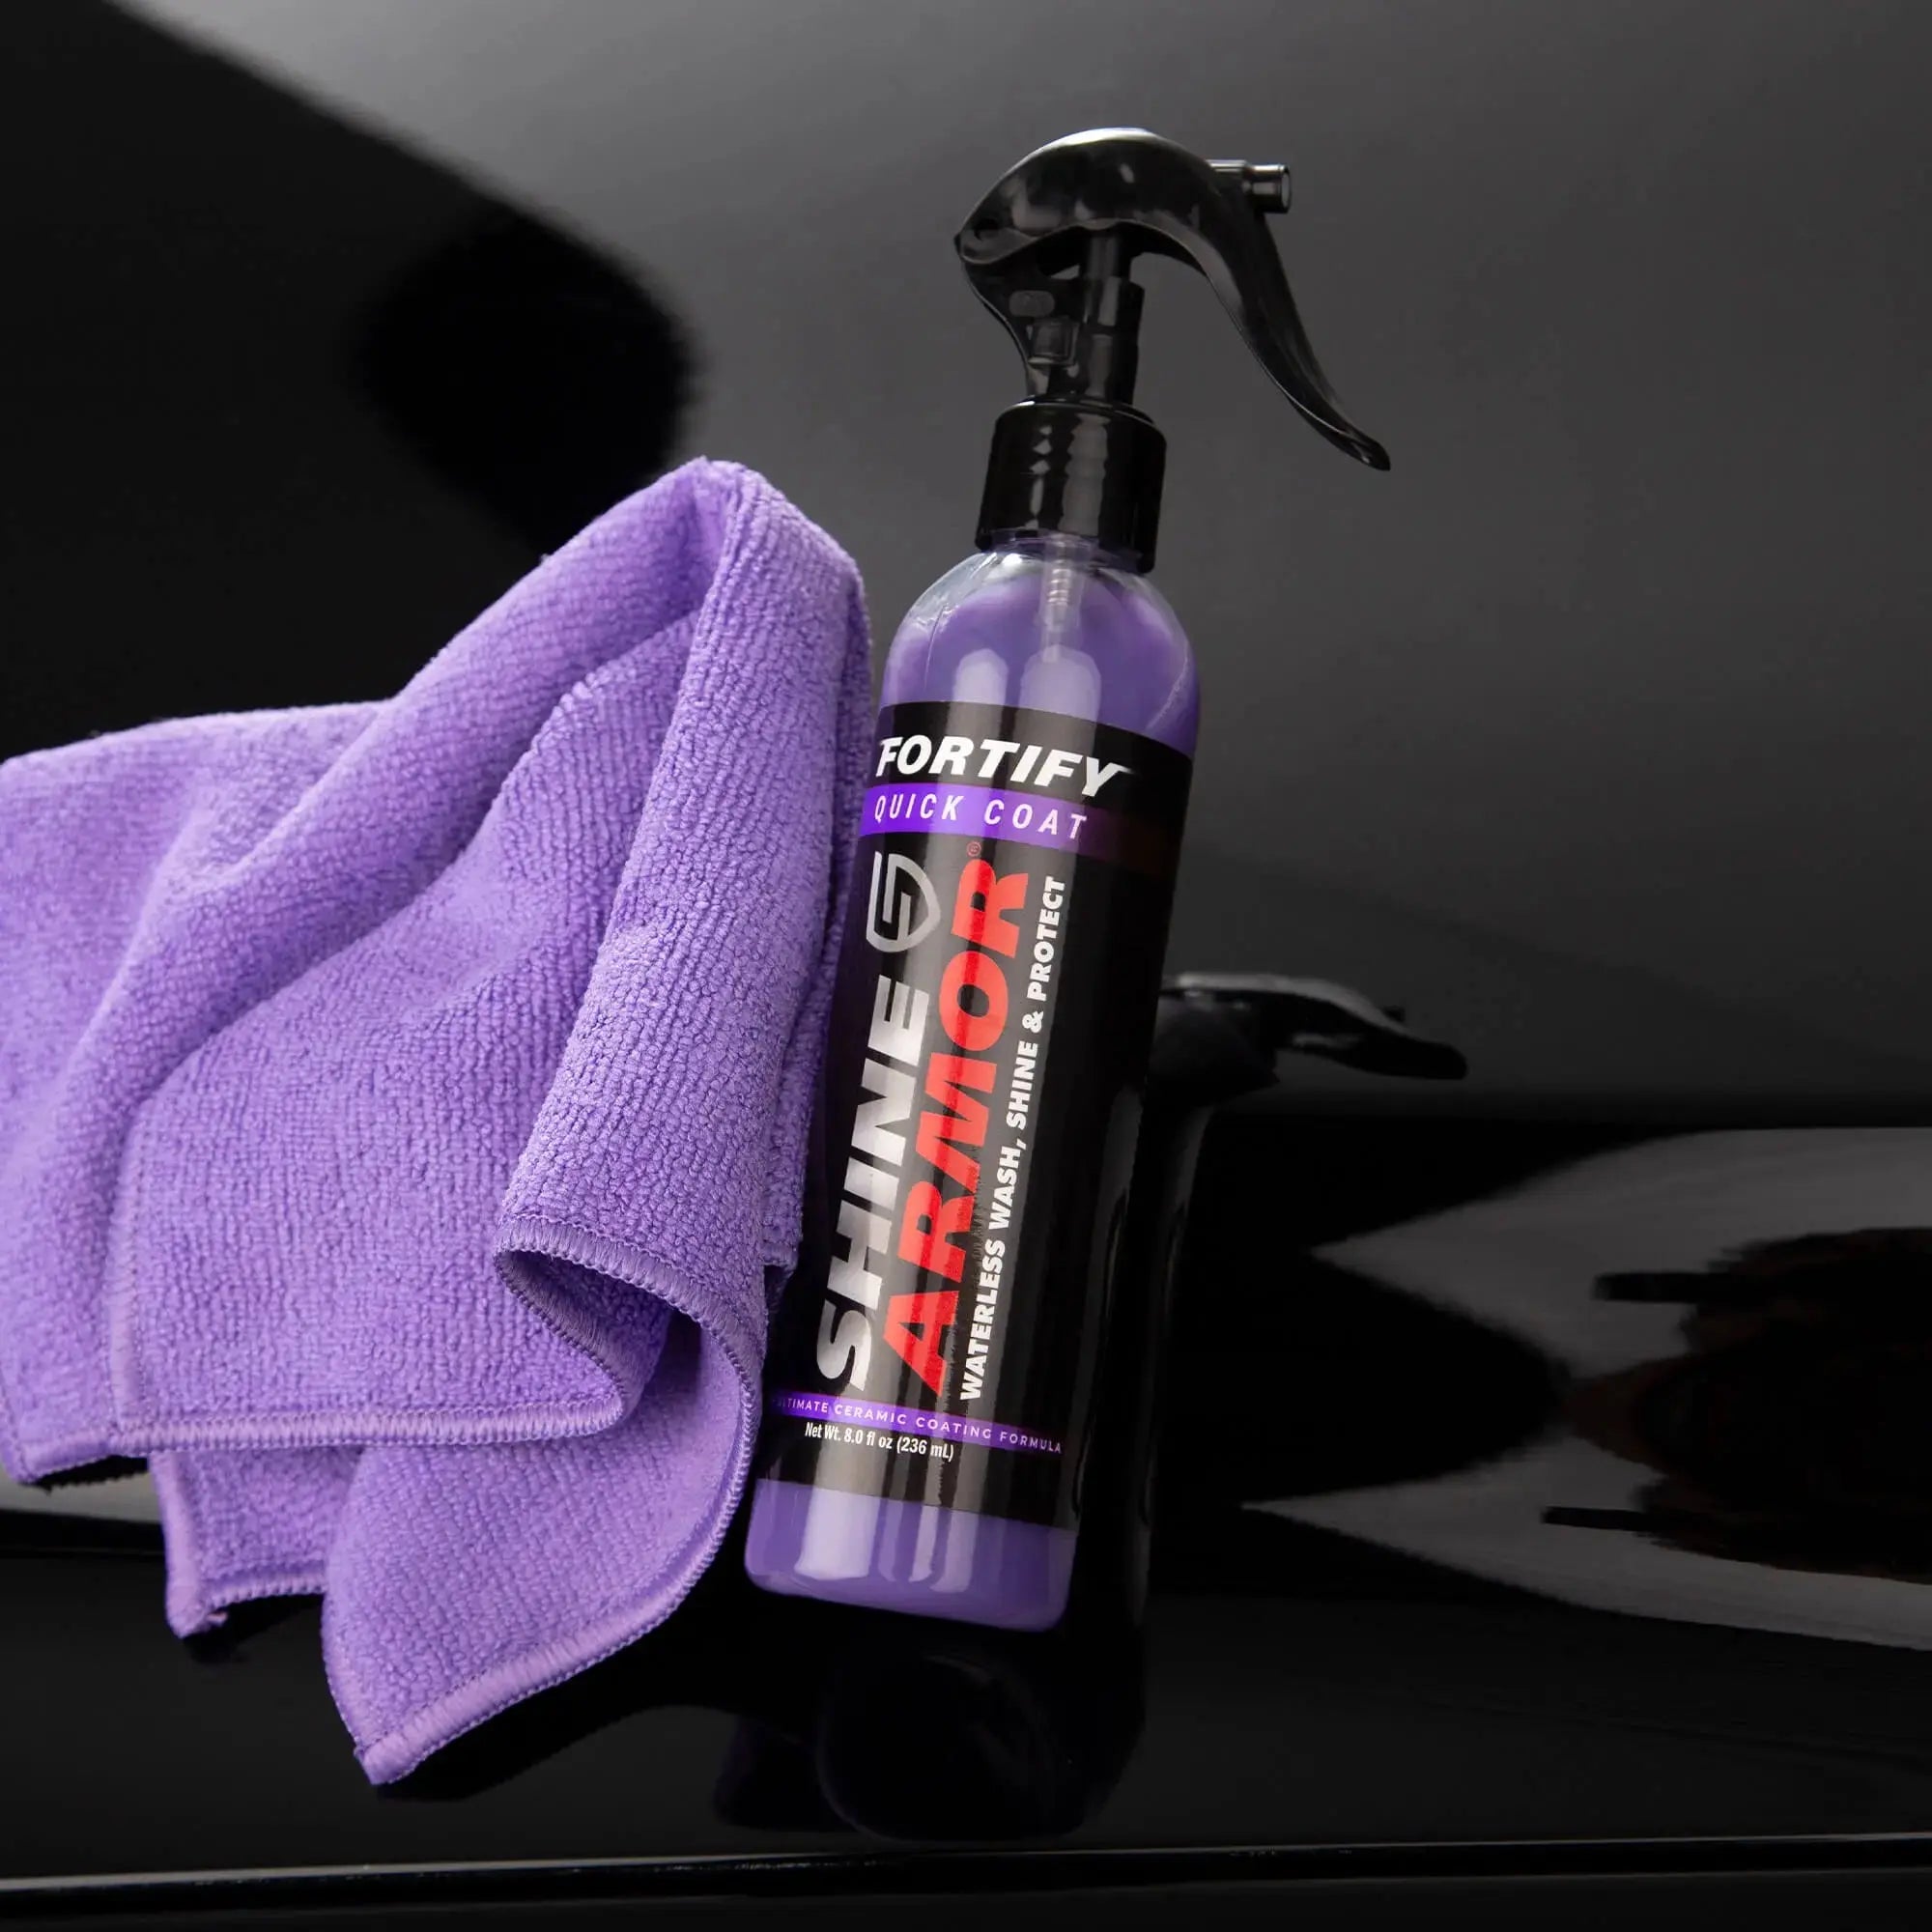 Swac Ceramic Car Exterior Spray Wax  Protection Gloss Enhancer – Autoarmour